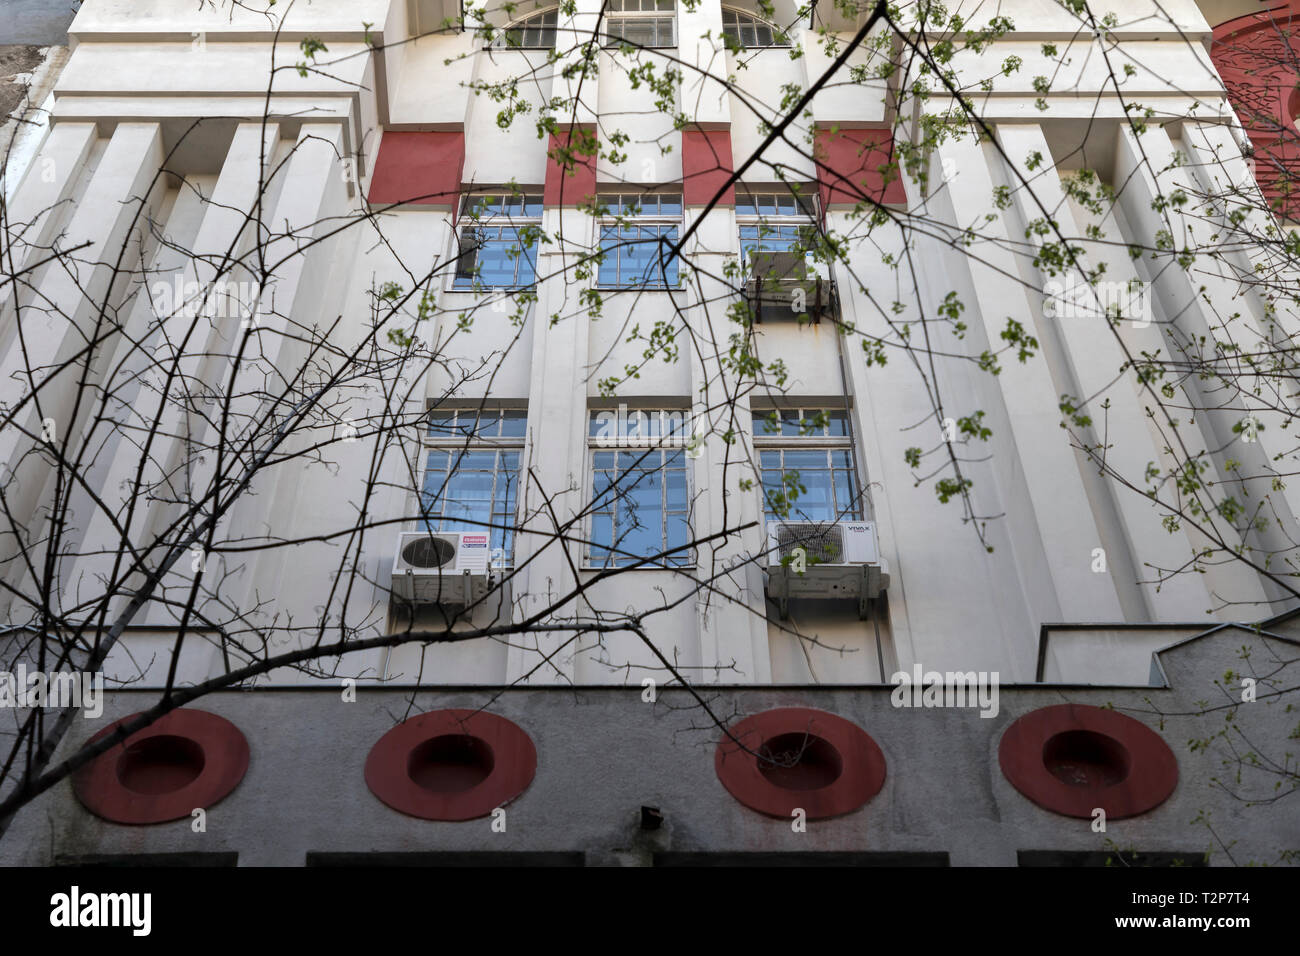 Belgrade, Serbie, Mars 2019 : mur avant du PTT (Postal-Telegraphic-communication téléphonique) Musée du début du 20ème siècle dans le centre-ville Banque D'Images